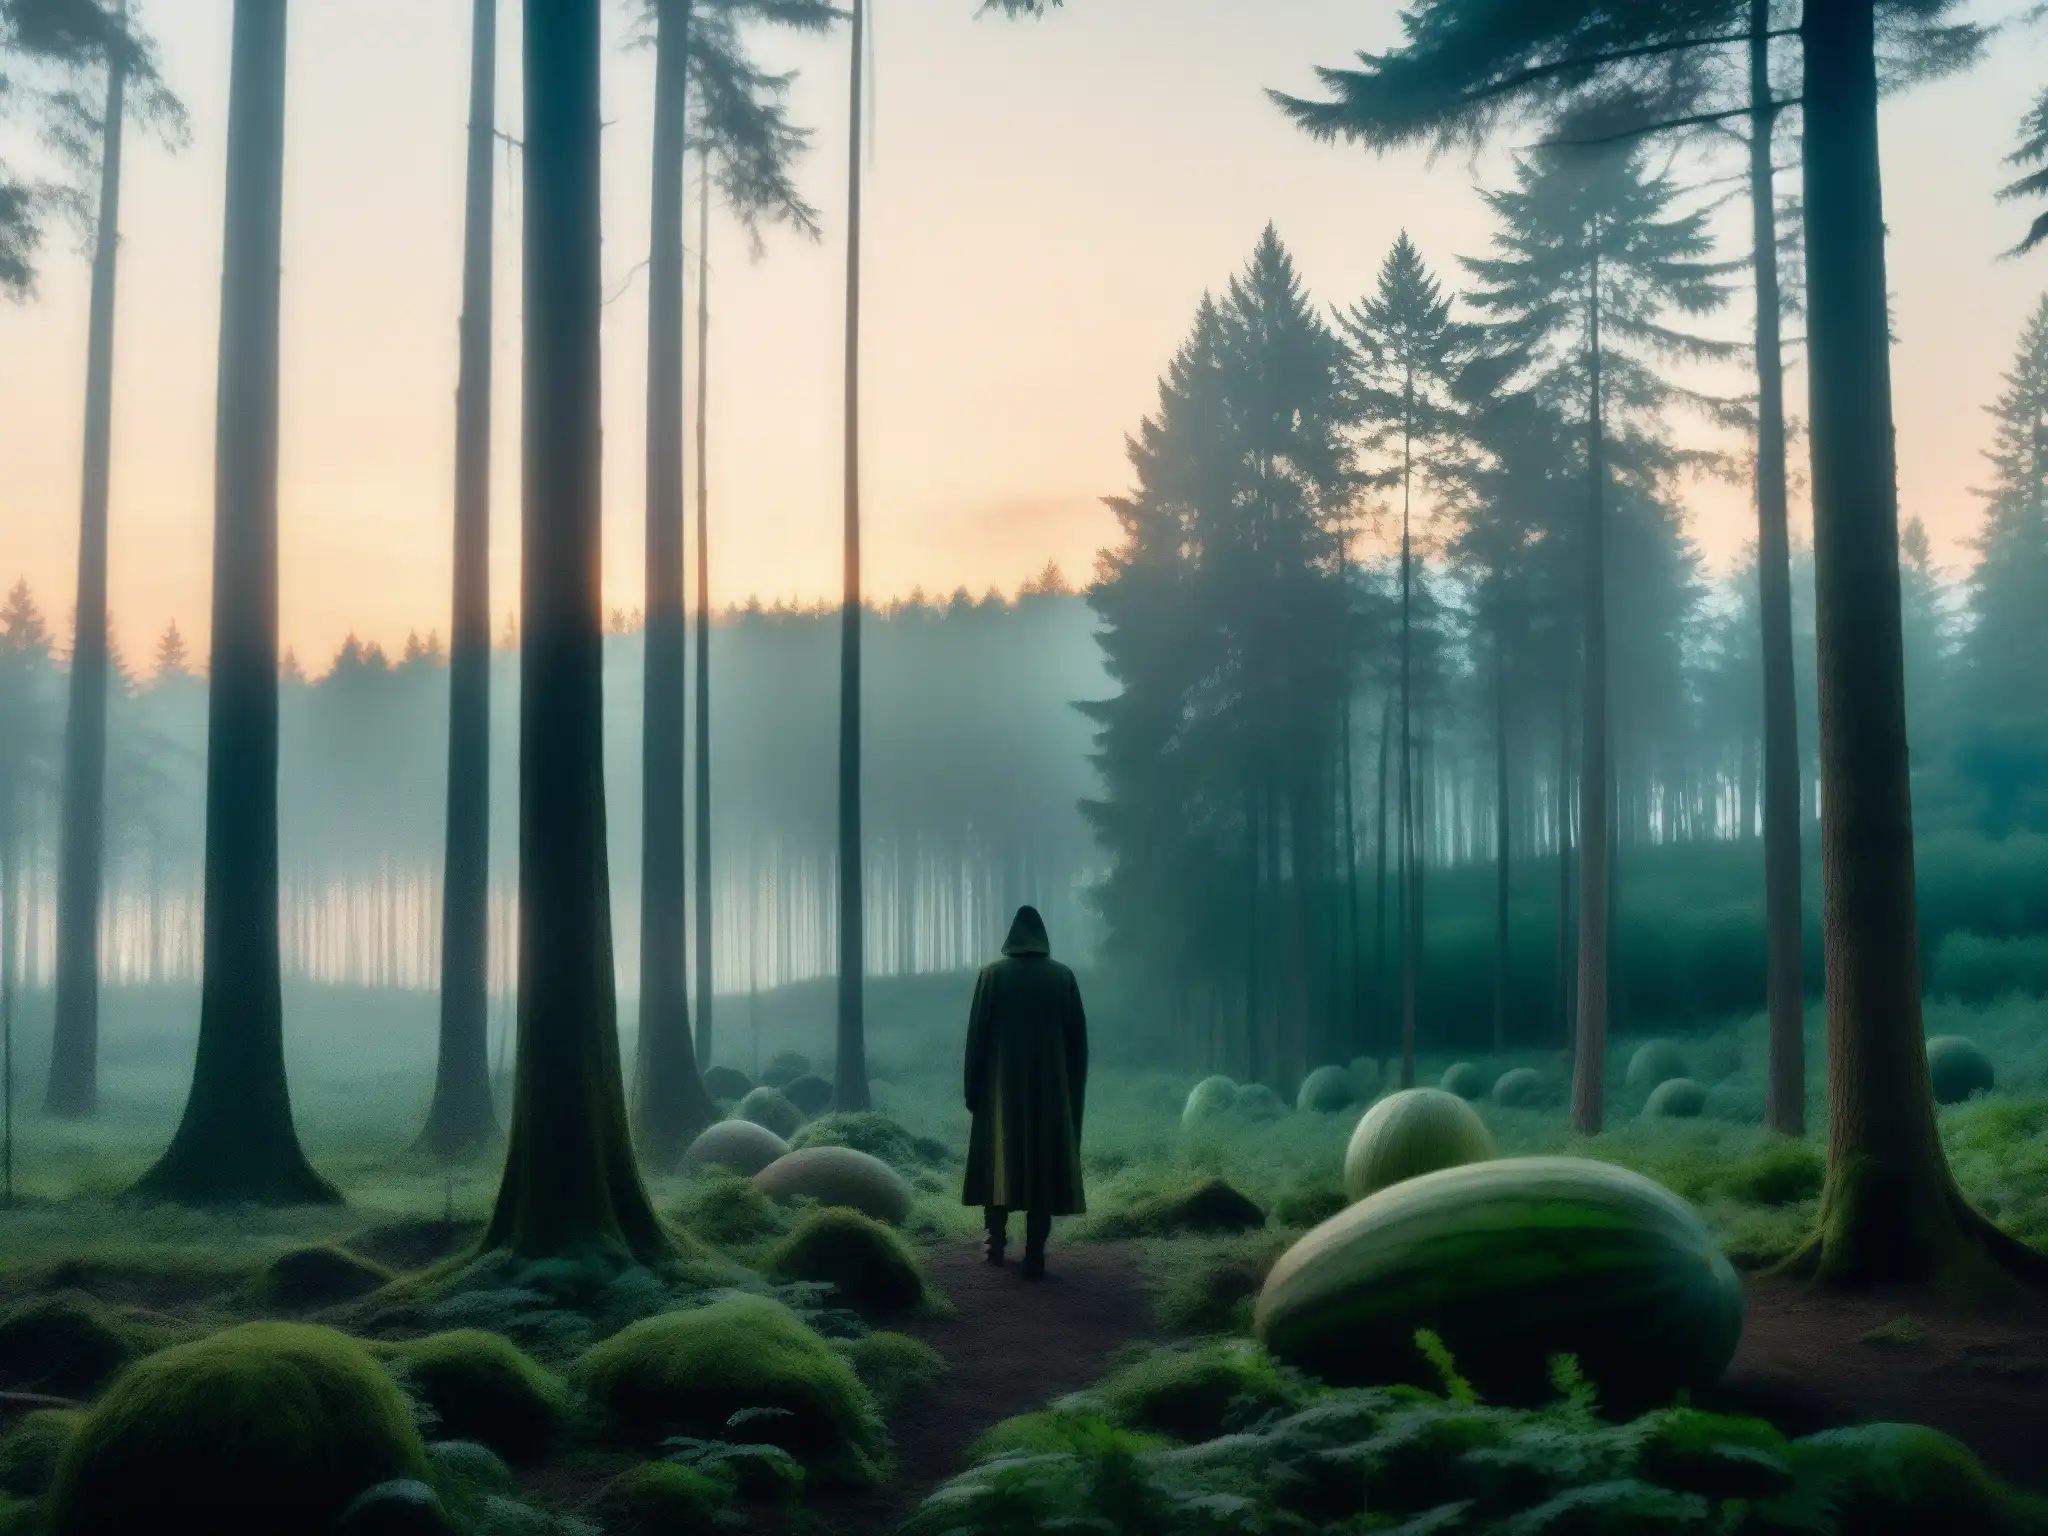 Imagen de un denso bosque al atardecer con una figura misteriosa y aura inquietante, evocando el origen y expansión del mito Melonheads